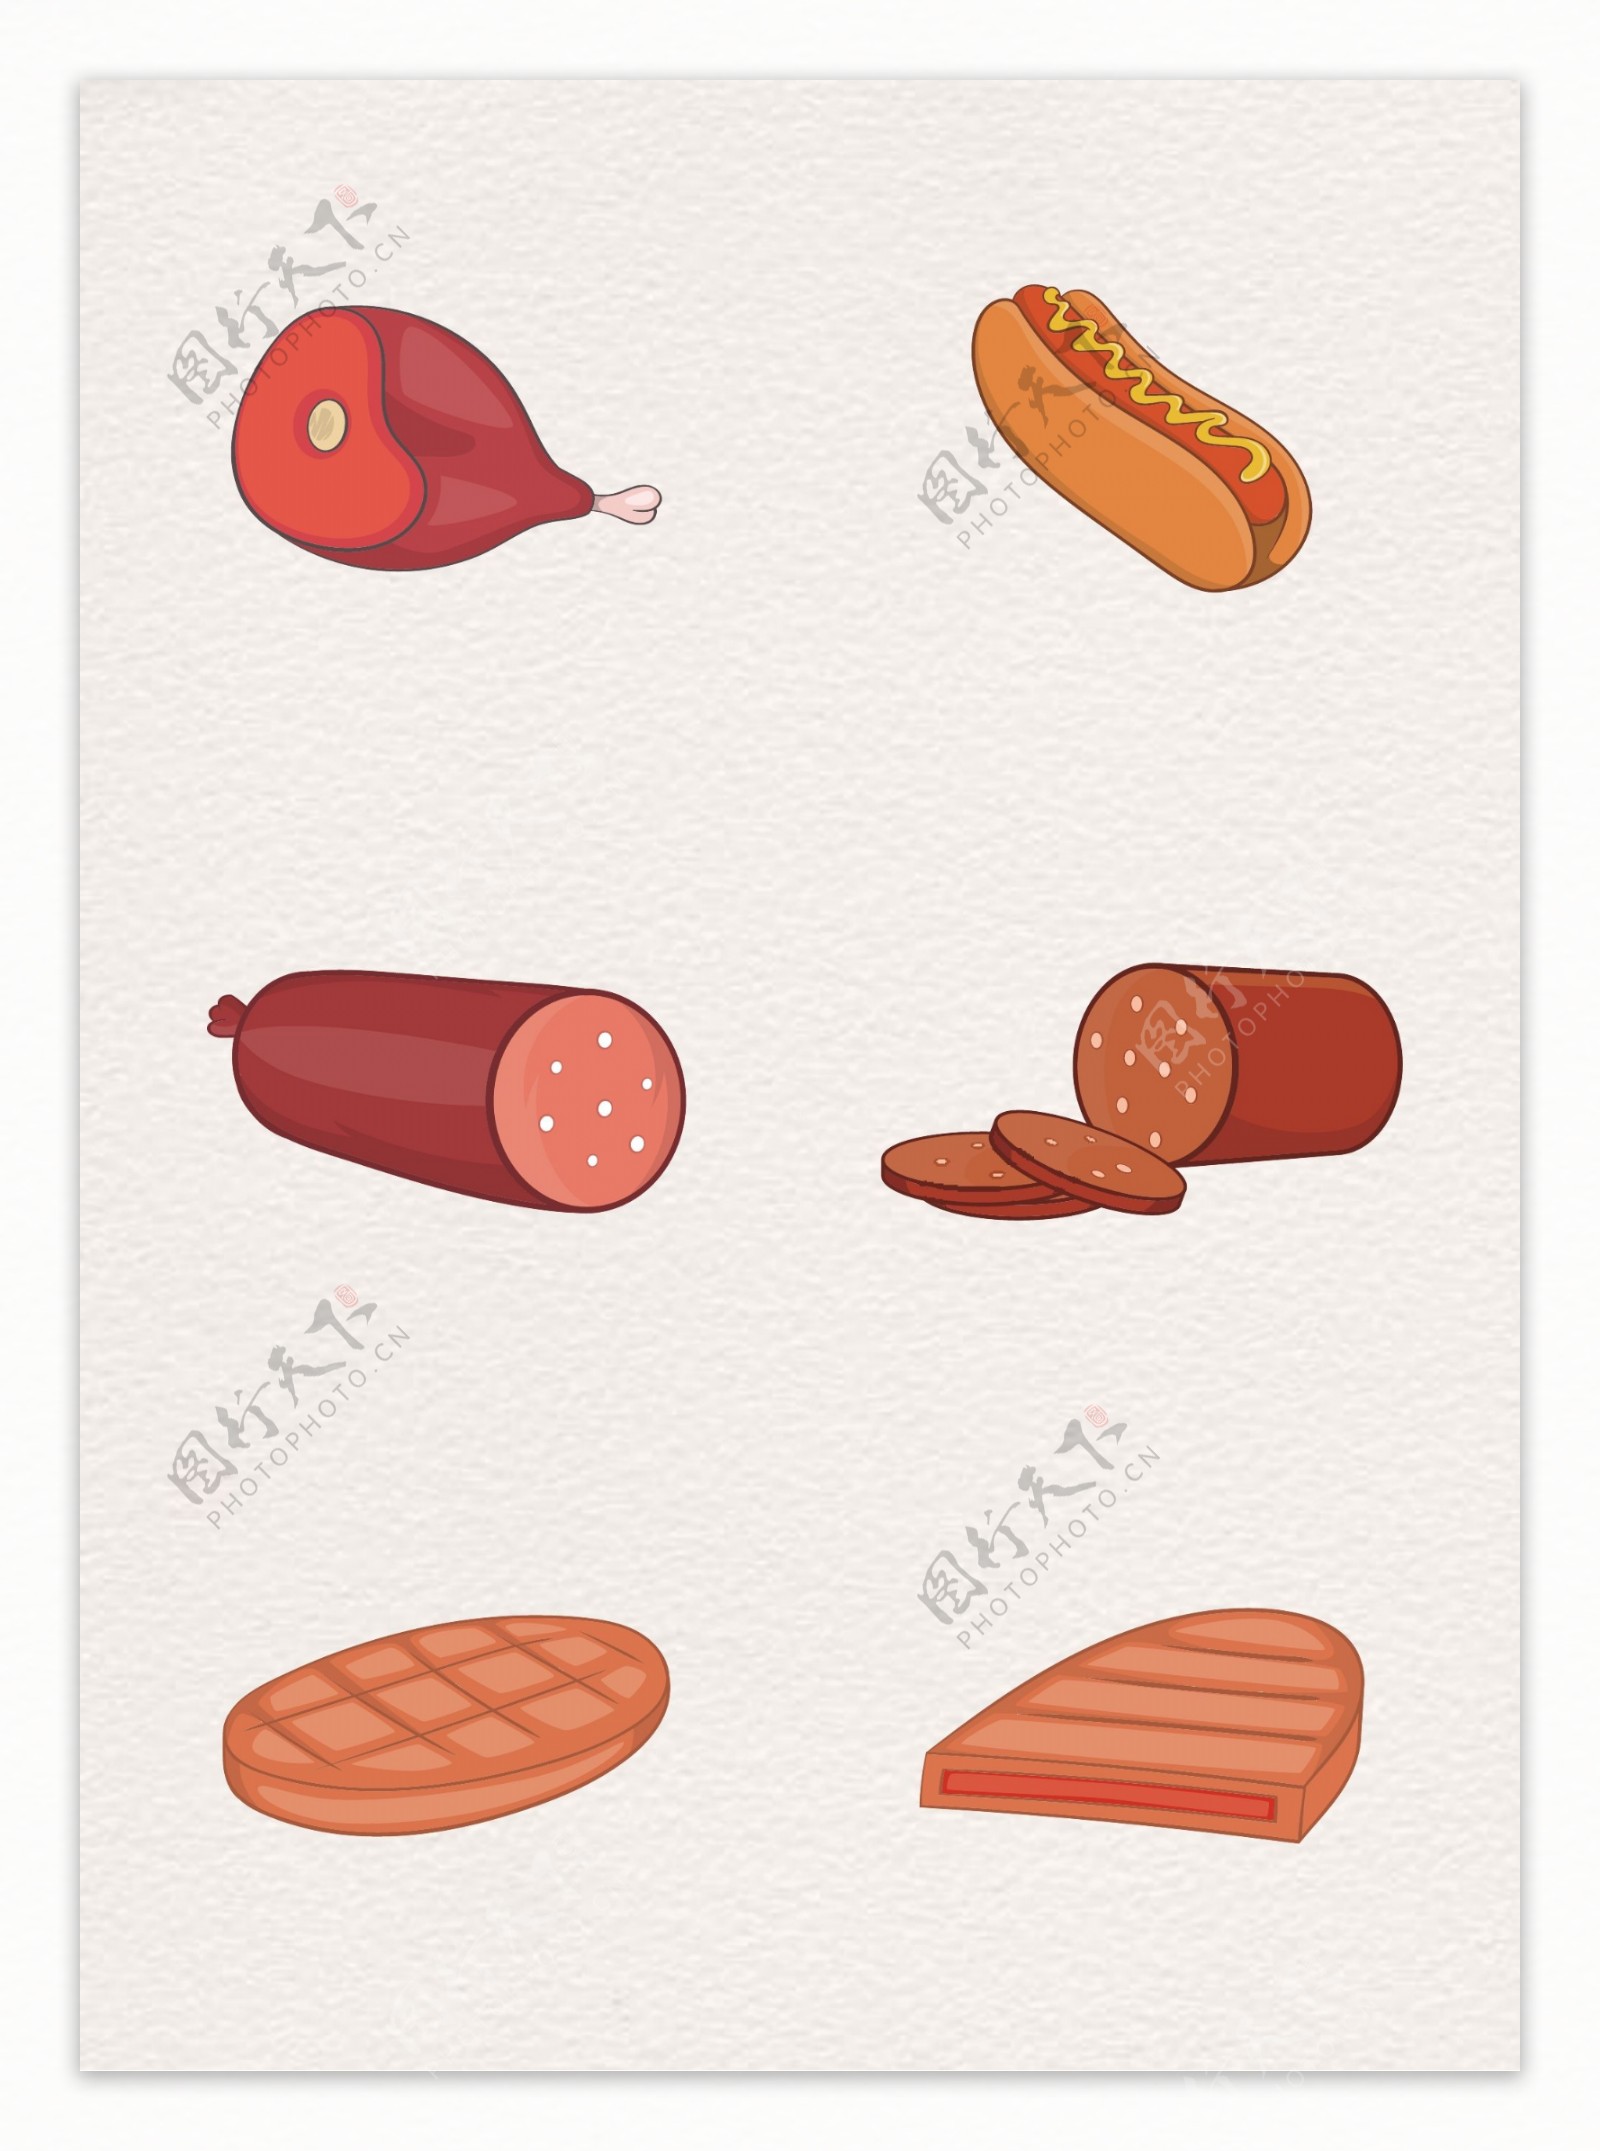 卡通手绘肉食素材设计